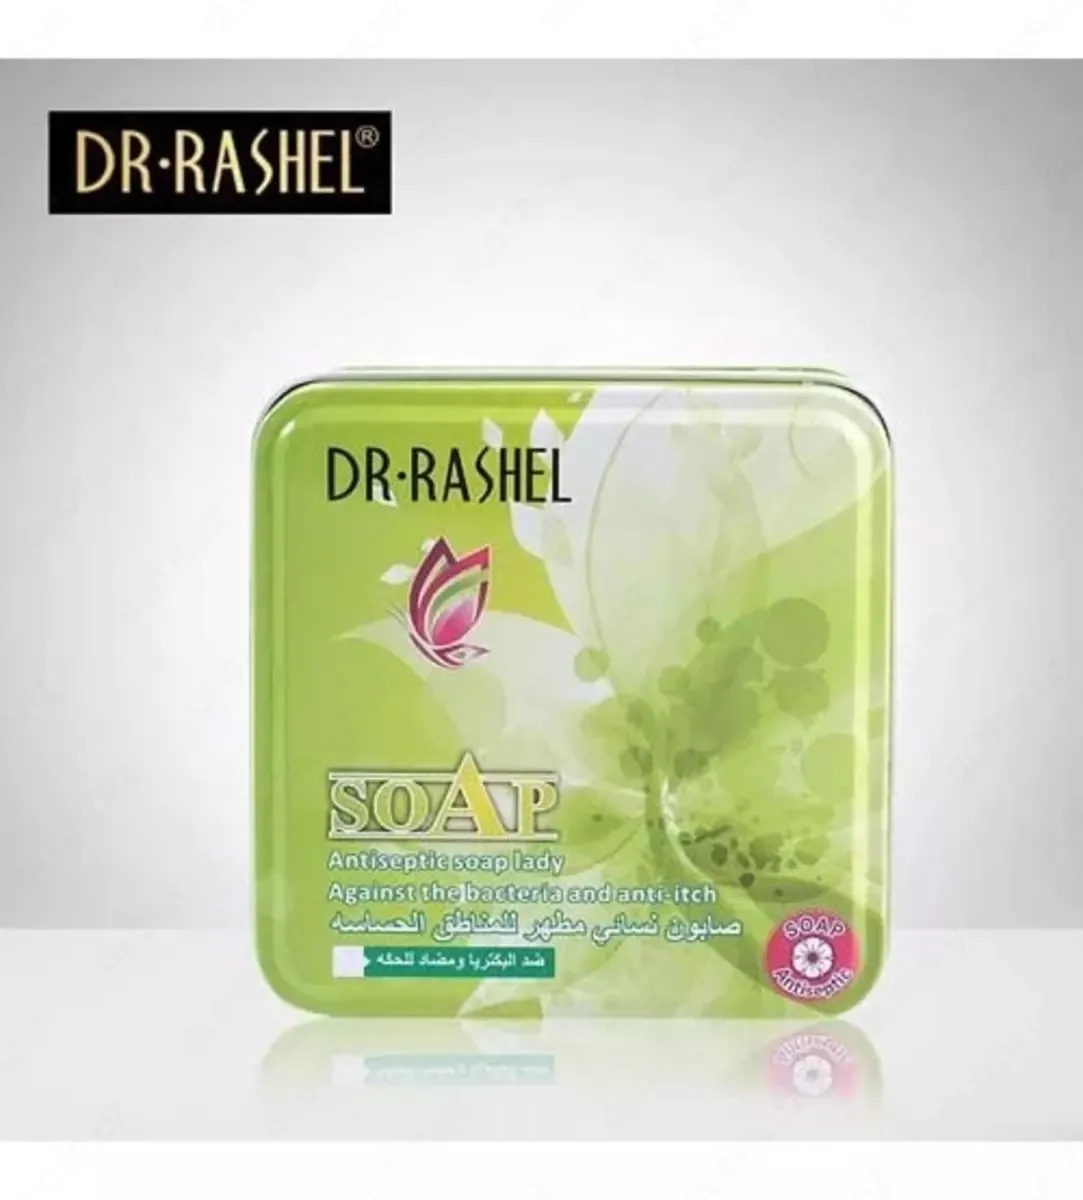 Антисептическое мыло против бактерий и зуда Dr. Rashel#1